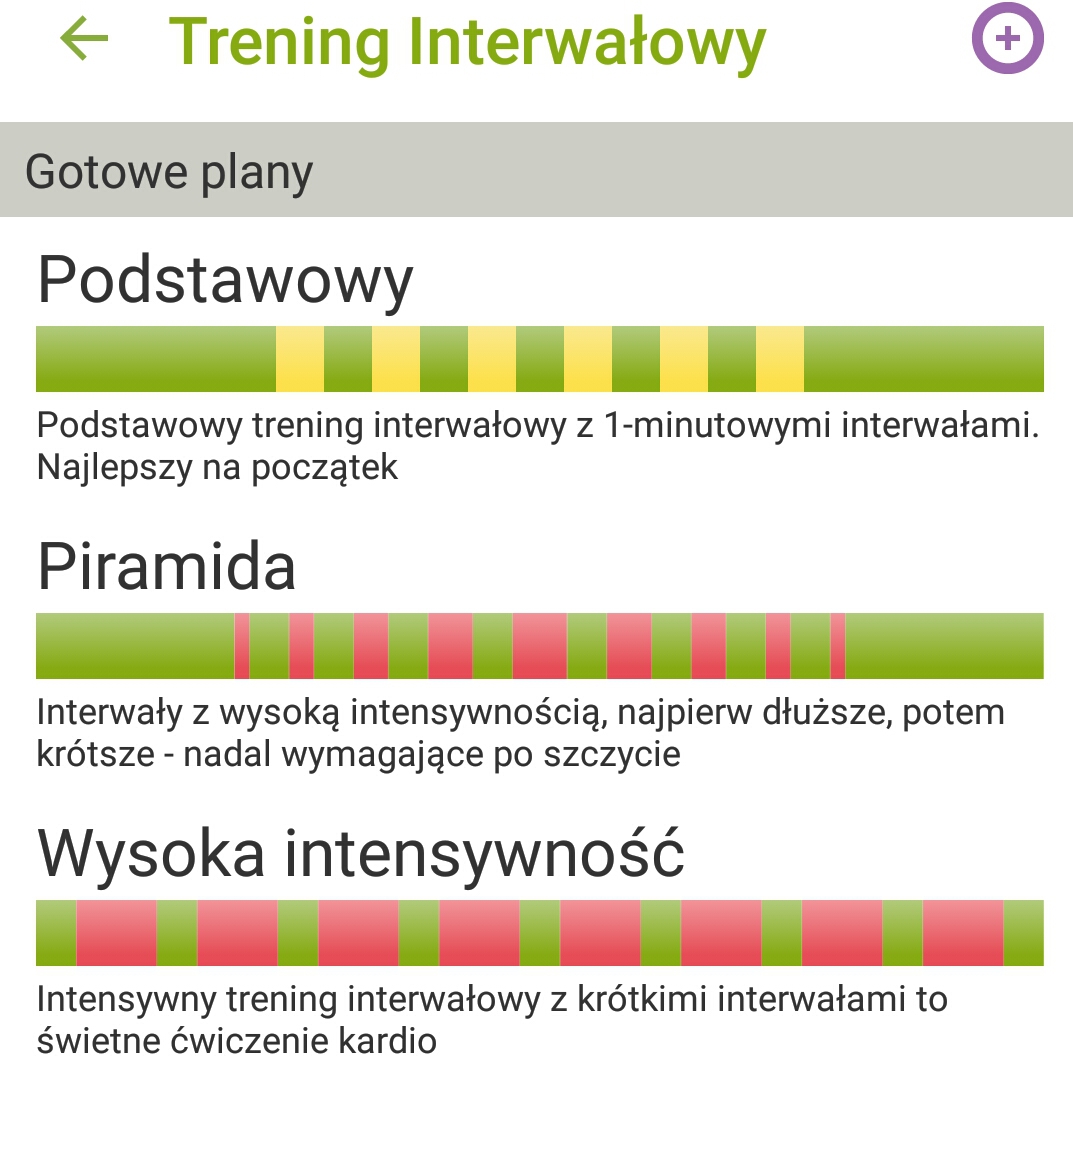 Jak sobie ustawić interwały w #endomondo? Szukam... - d.........n - Wykop.pl